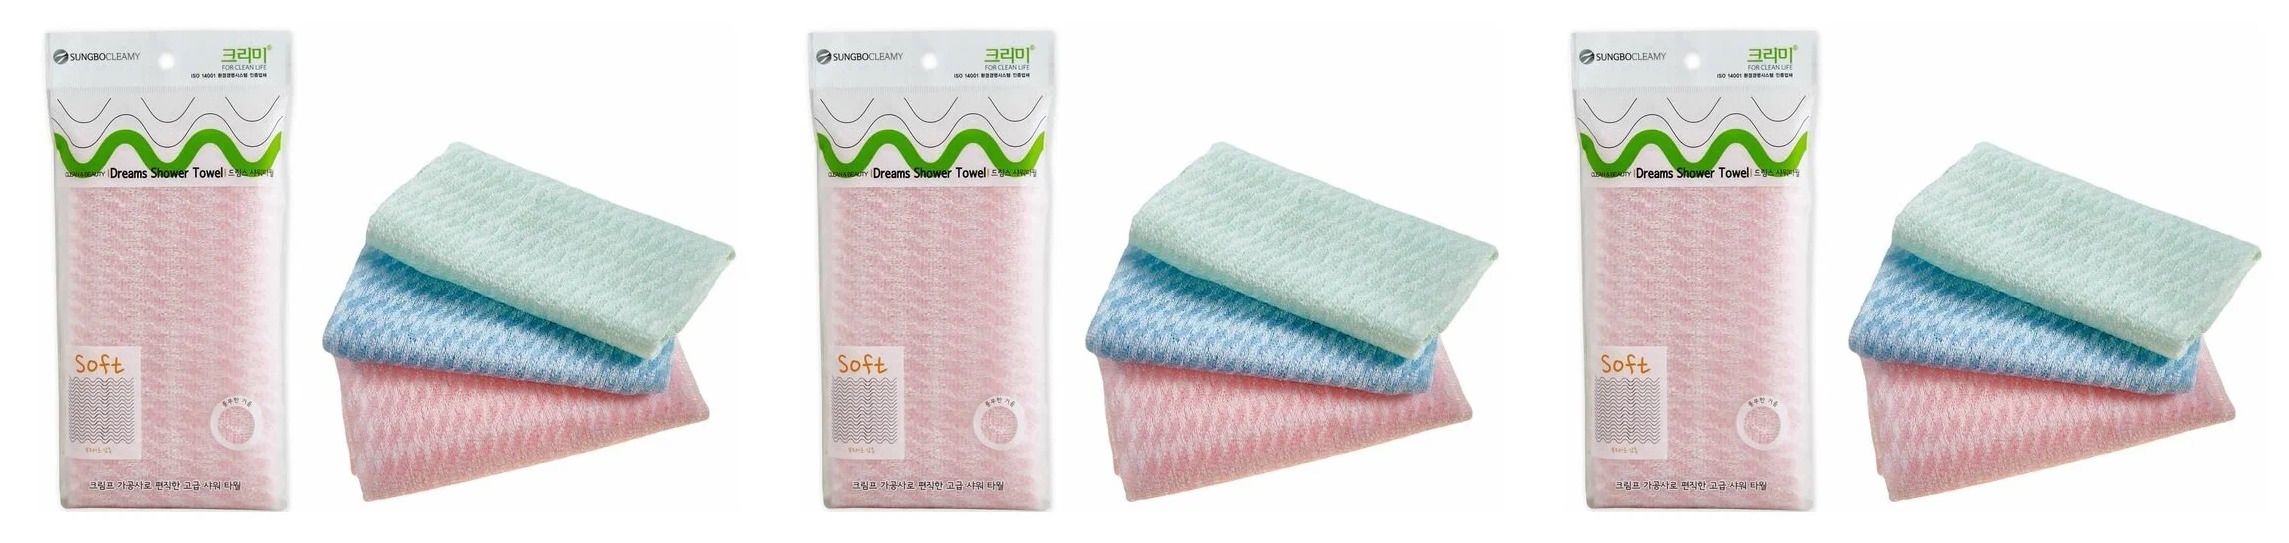 Мочалка Sungbo Cleamy bubble shower towel 28х100 3шт мочалка sungbo cleamy daily shower towel 28х90 2шт